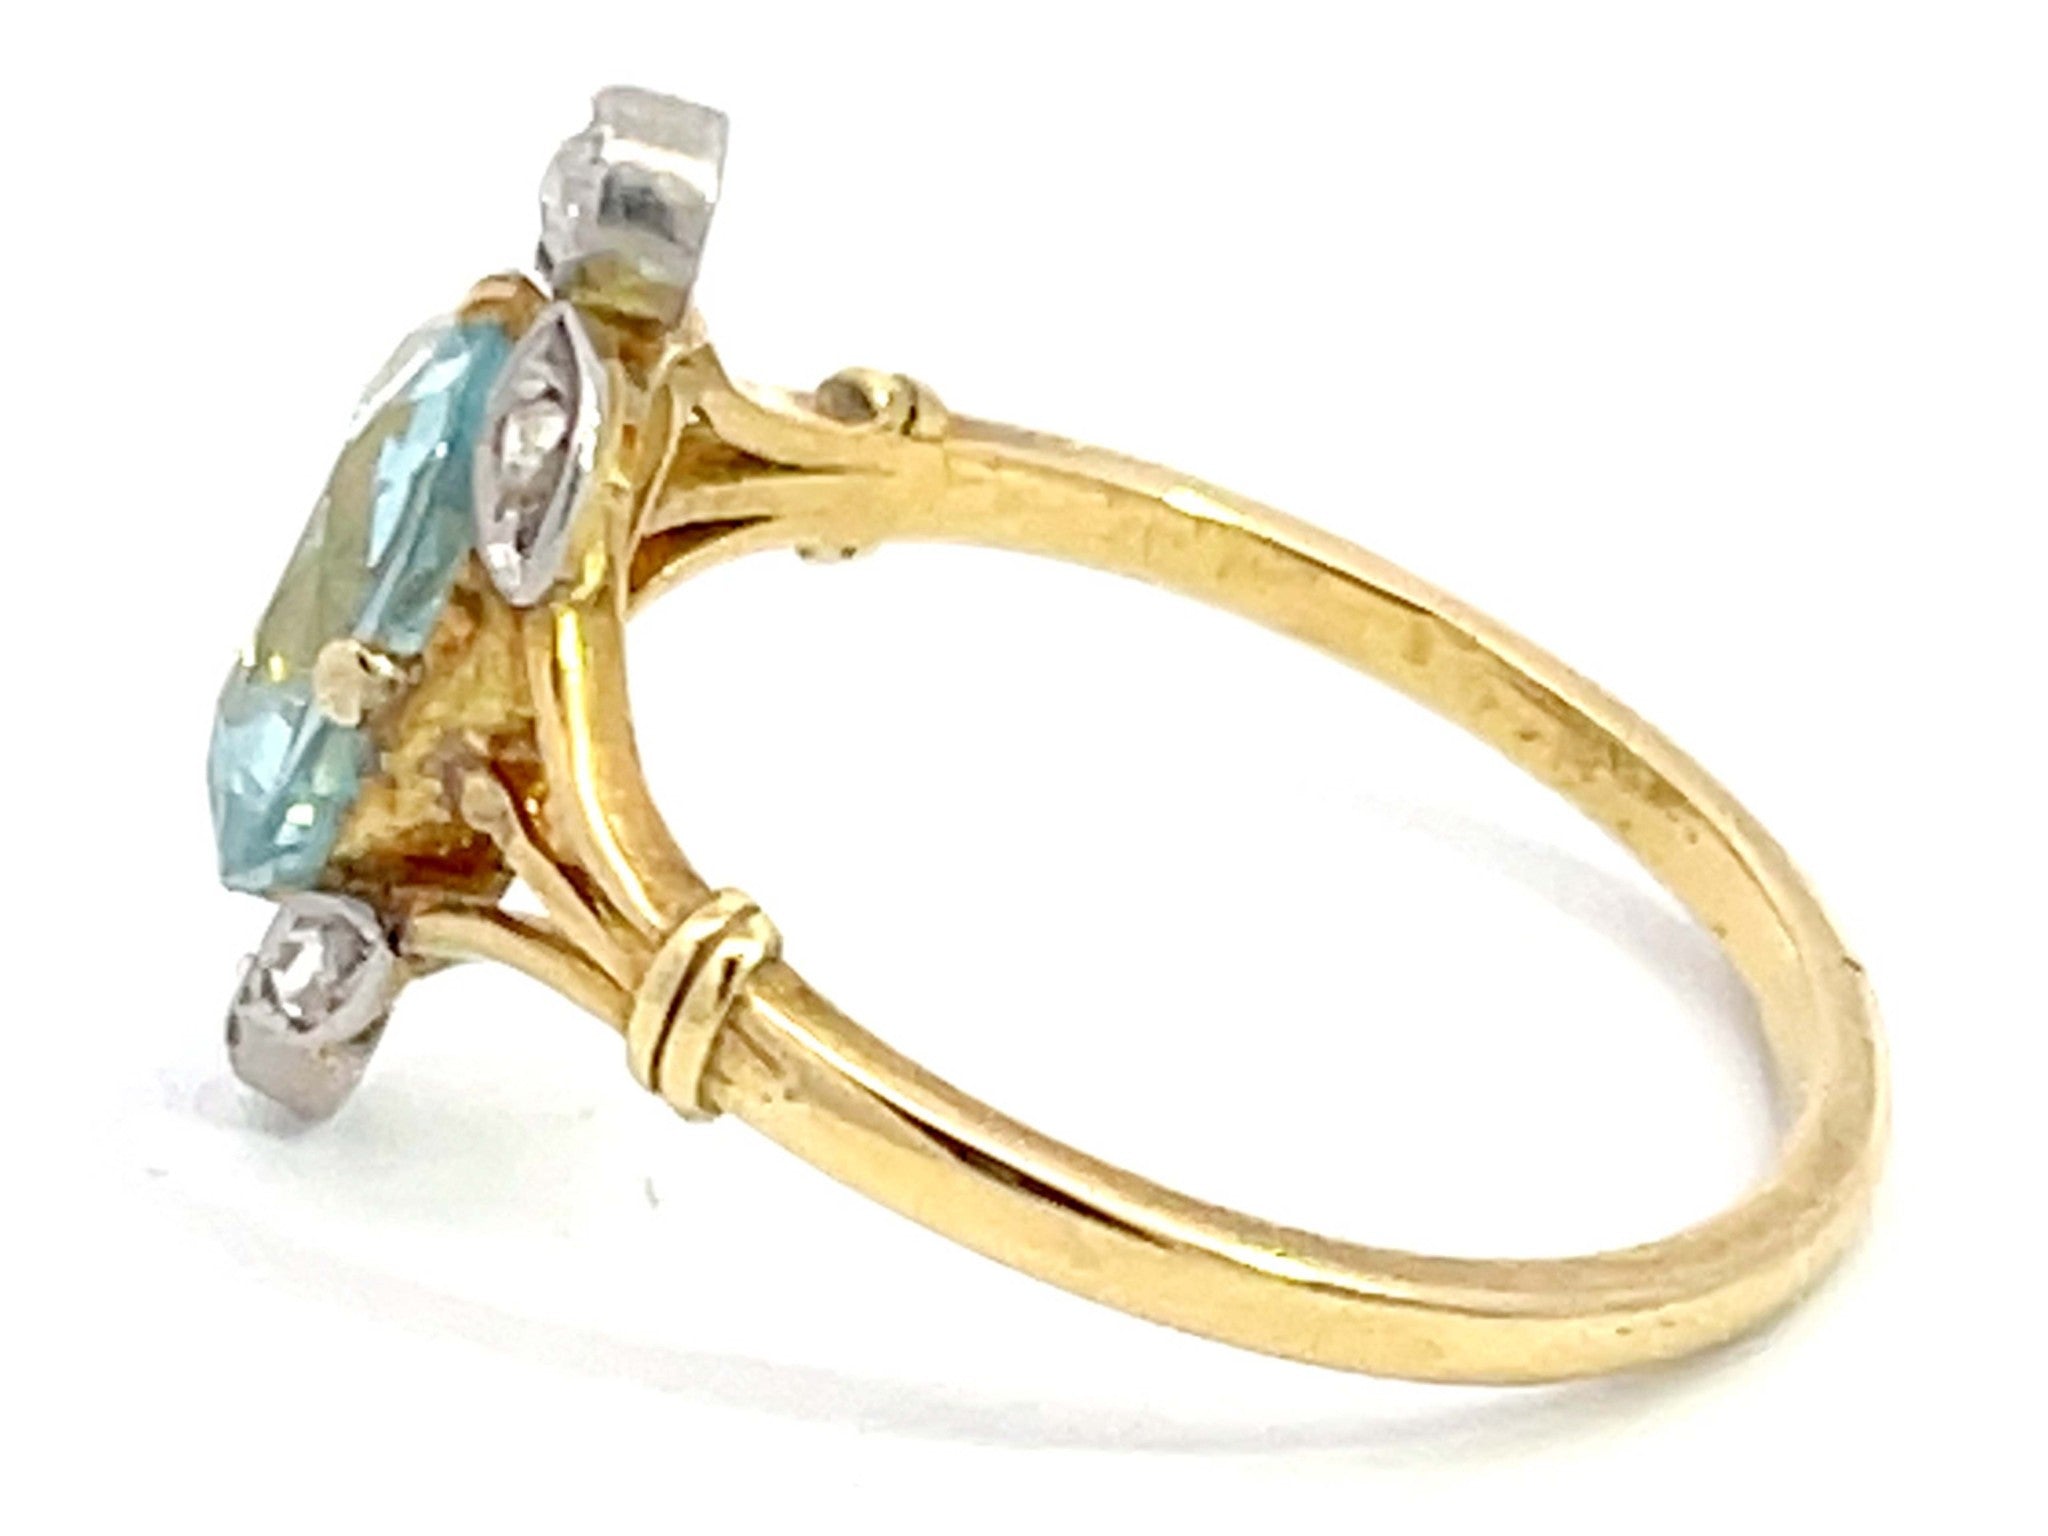 Rectangular Cushion Aquamarine and Diamond Ring in 18k Yellow Gold